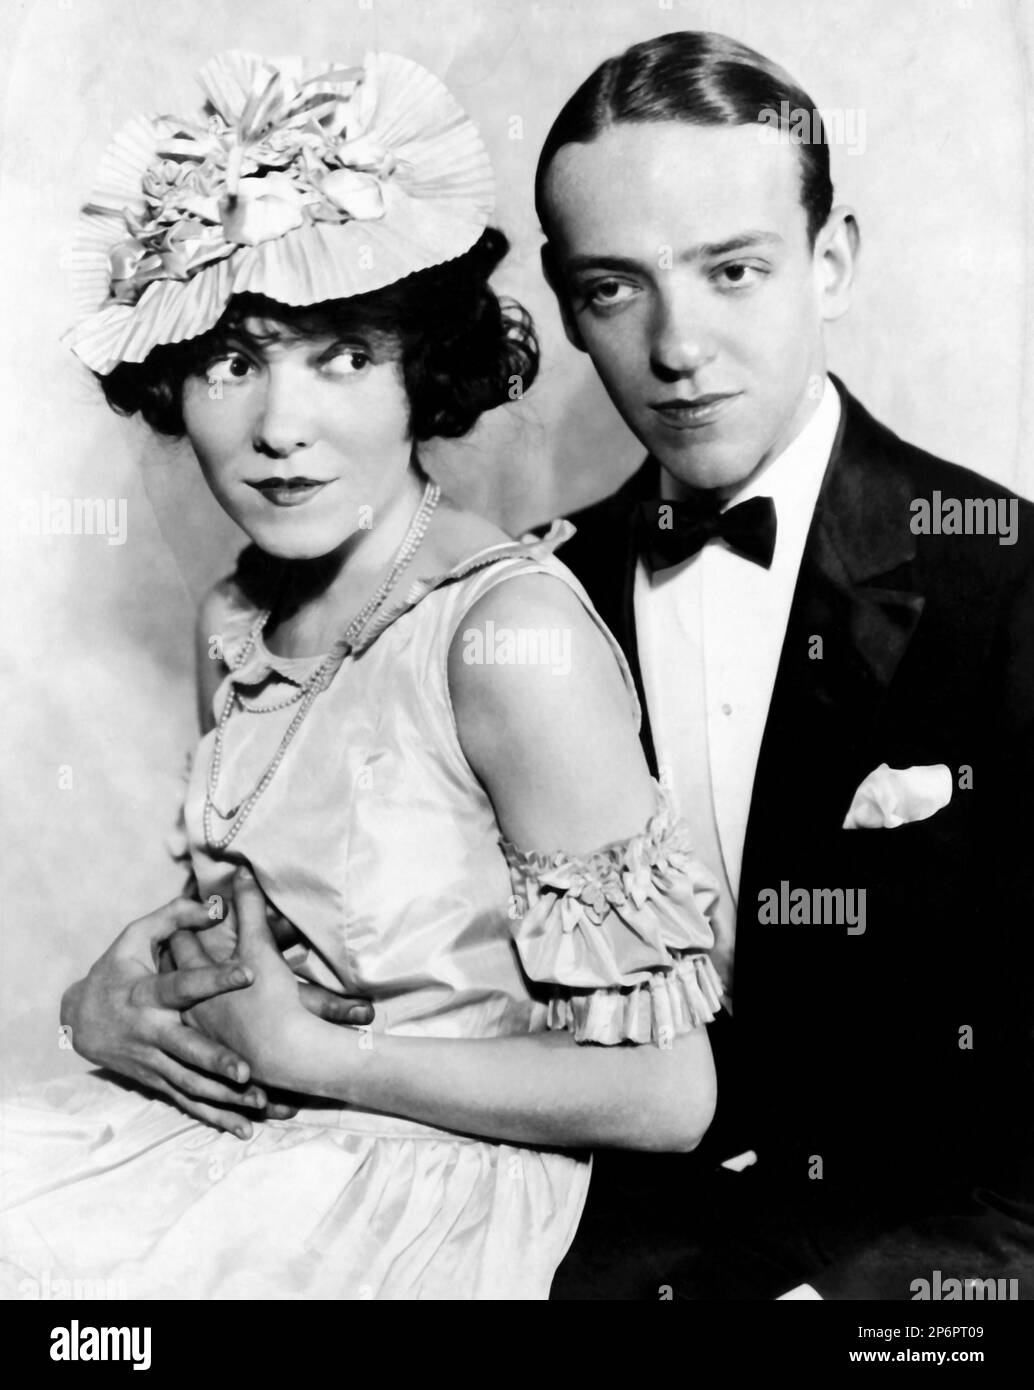 1933 ca  :  The  movie actor and dancer FRED ASTAIRE ( 1899 - 1987 ) with his sister ADELE ASTAIRE ( married in 1932 with Lord Charles Cavendish )  in a pubblicitary shot  - CINEMA - ATTORE CINEMATOGRAFICO  - tie  - cravatta - papillon - bow tie - grease - brillantina  - fazzoletto nel taschino - pochette - DANZA - DANCE - ballerino - TIP TAP - fratello e sorella - brother - hat - cappello - neclace - collana - bijoux - abbraccio - embrace   ---- Archivio GBB Stock Photo